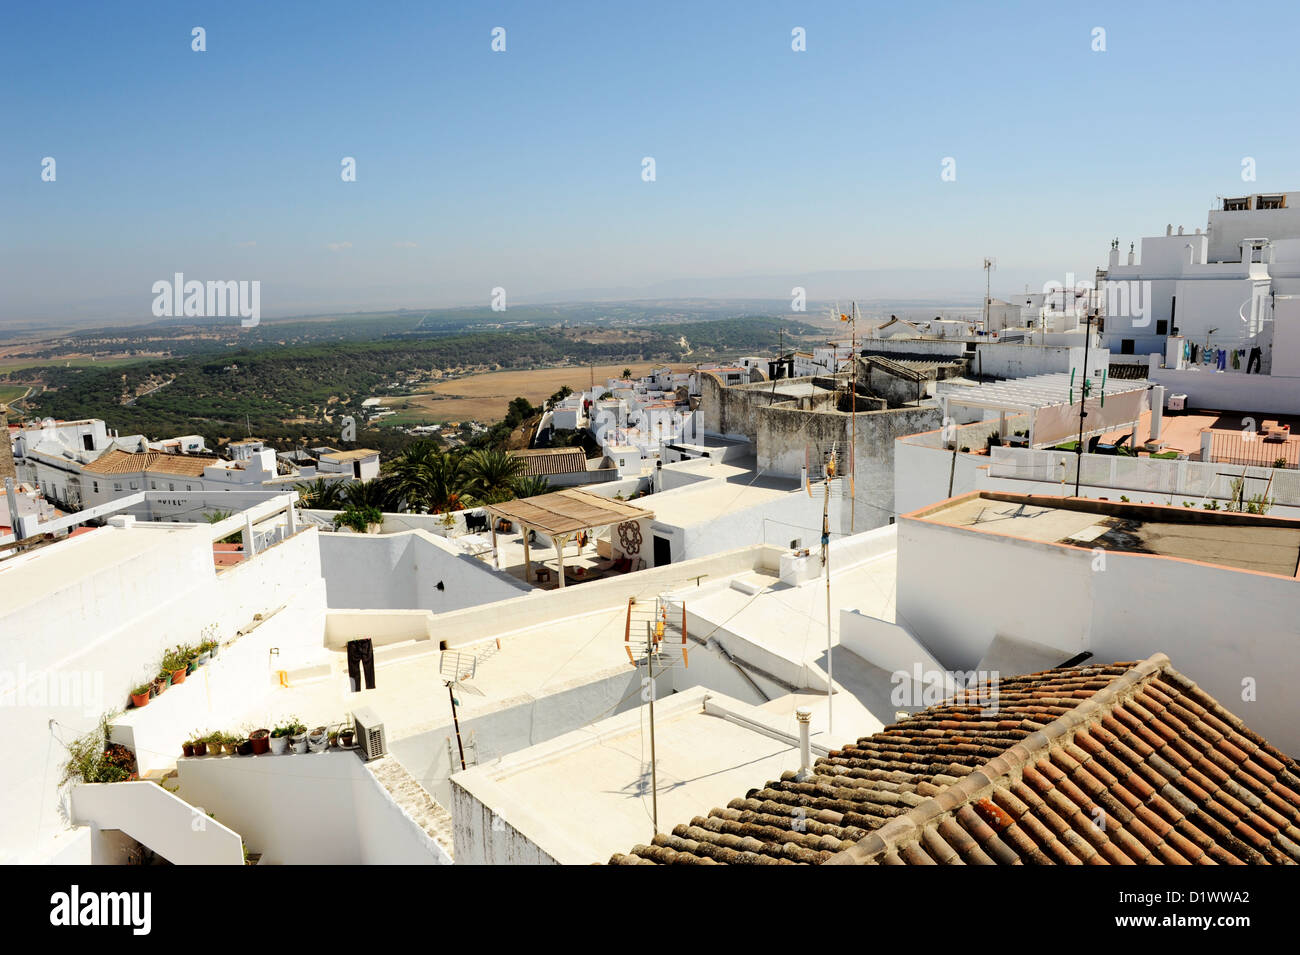 Vejer de la Frontera, uno dei Pueblos Blancos o bianche città dell'Andalusia famose per le loro pareti imbiancate, Spagna meridionale Foto Stock